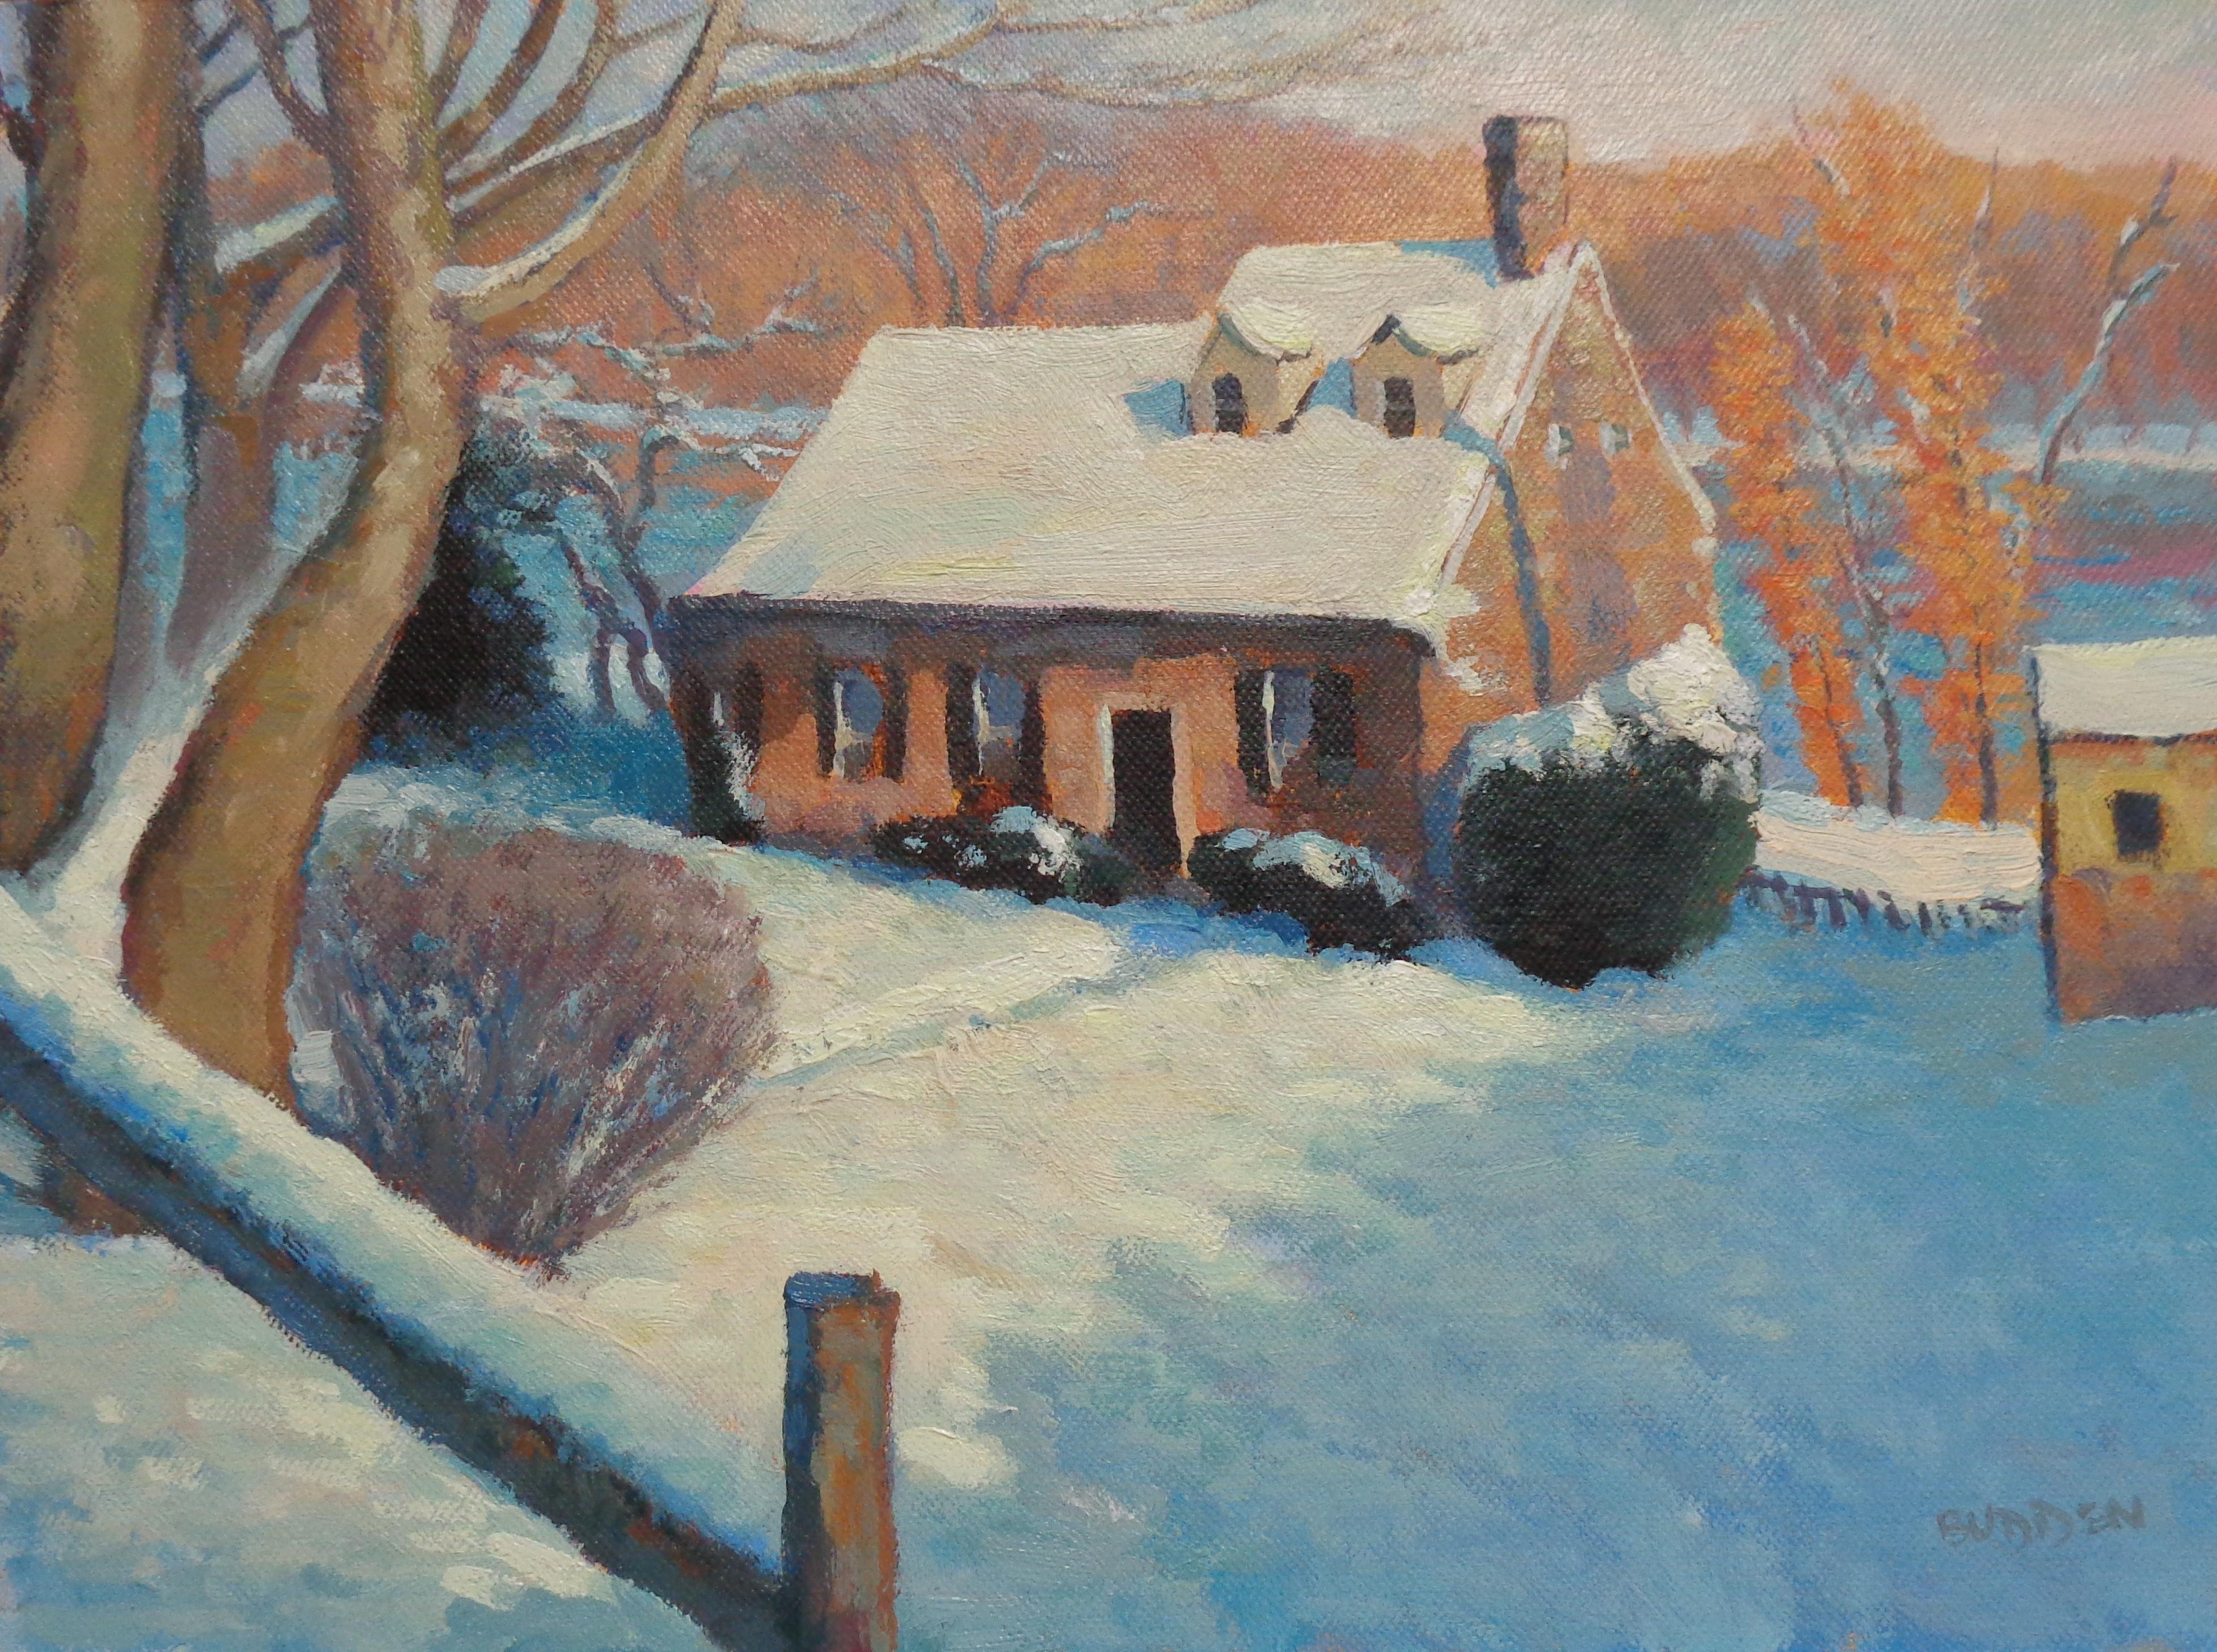 Hier ist eine Winterlandschaftsstudie eines Hauses in Lumberville, PA, am Delaware River, die gerade überarbeitet wurde. Mir gefällt besonders das Spiel der warmen und kühlen Farben, das durch das Licht am späten Nachmittag entsteht. Das Gemälde ist